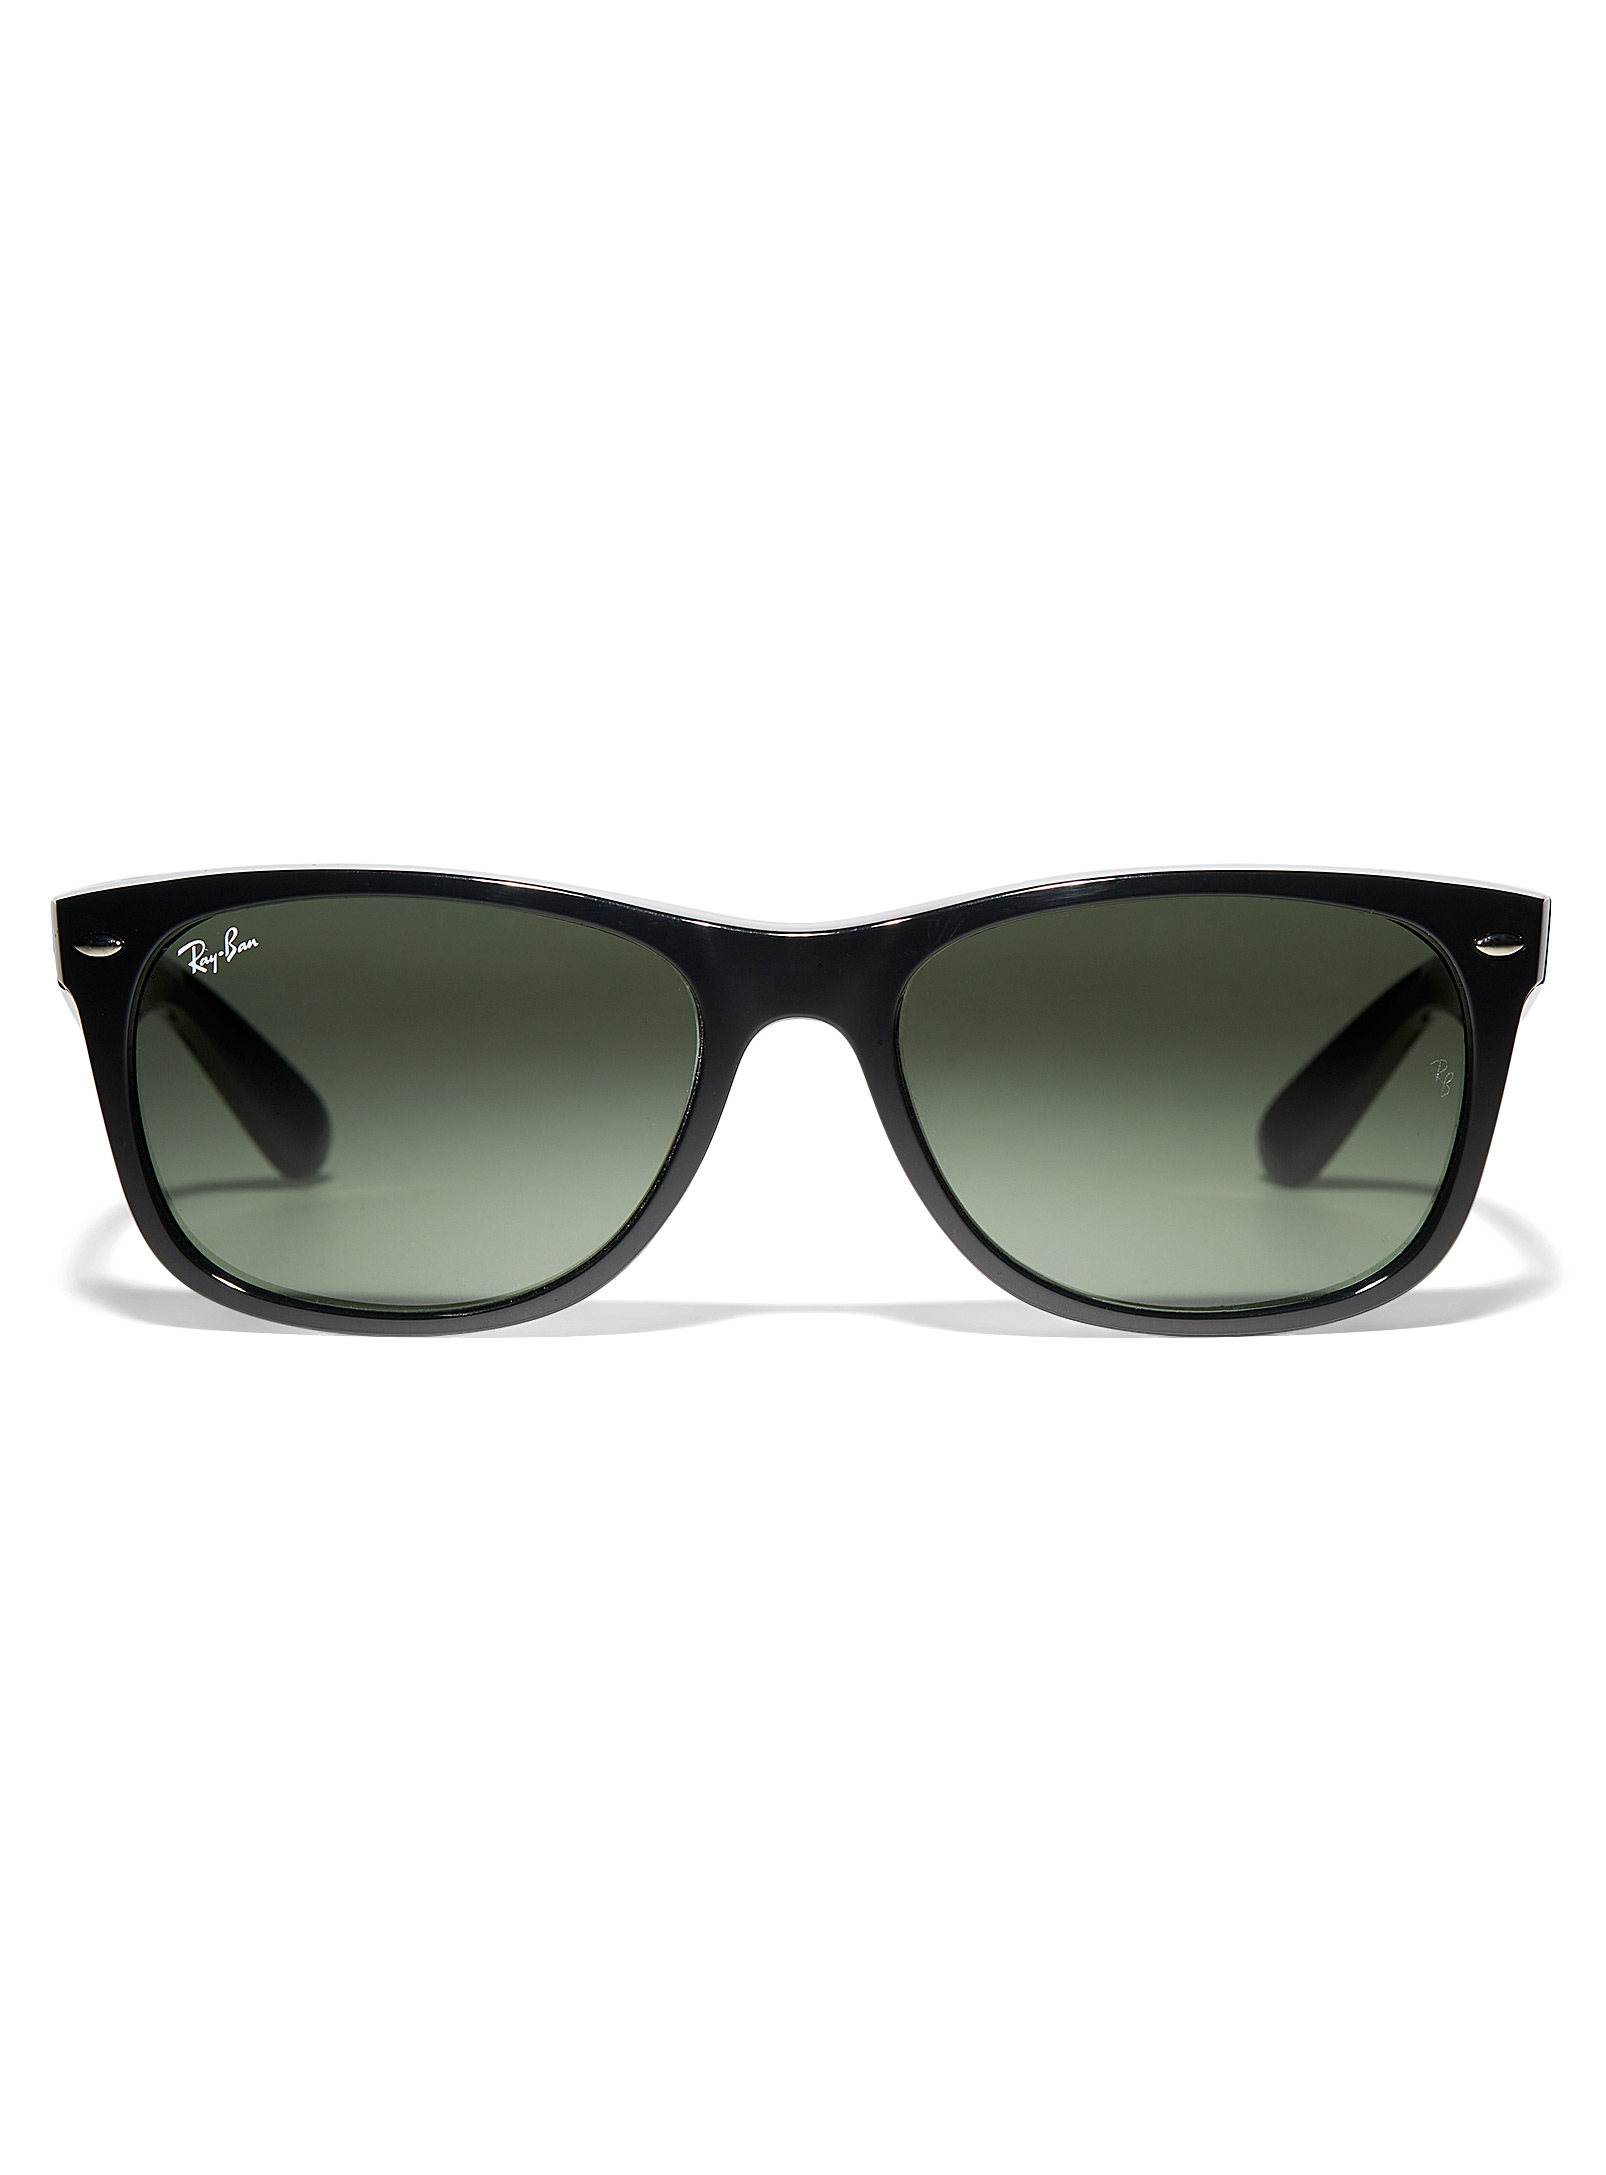 Ray-Ban - Les lunettes de soleil rectangulaires New Wayfarer